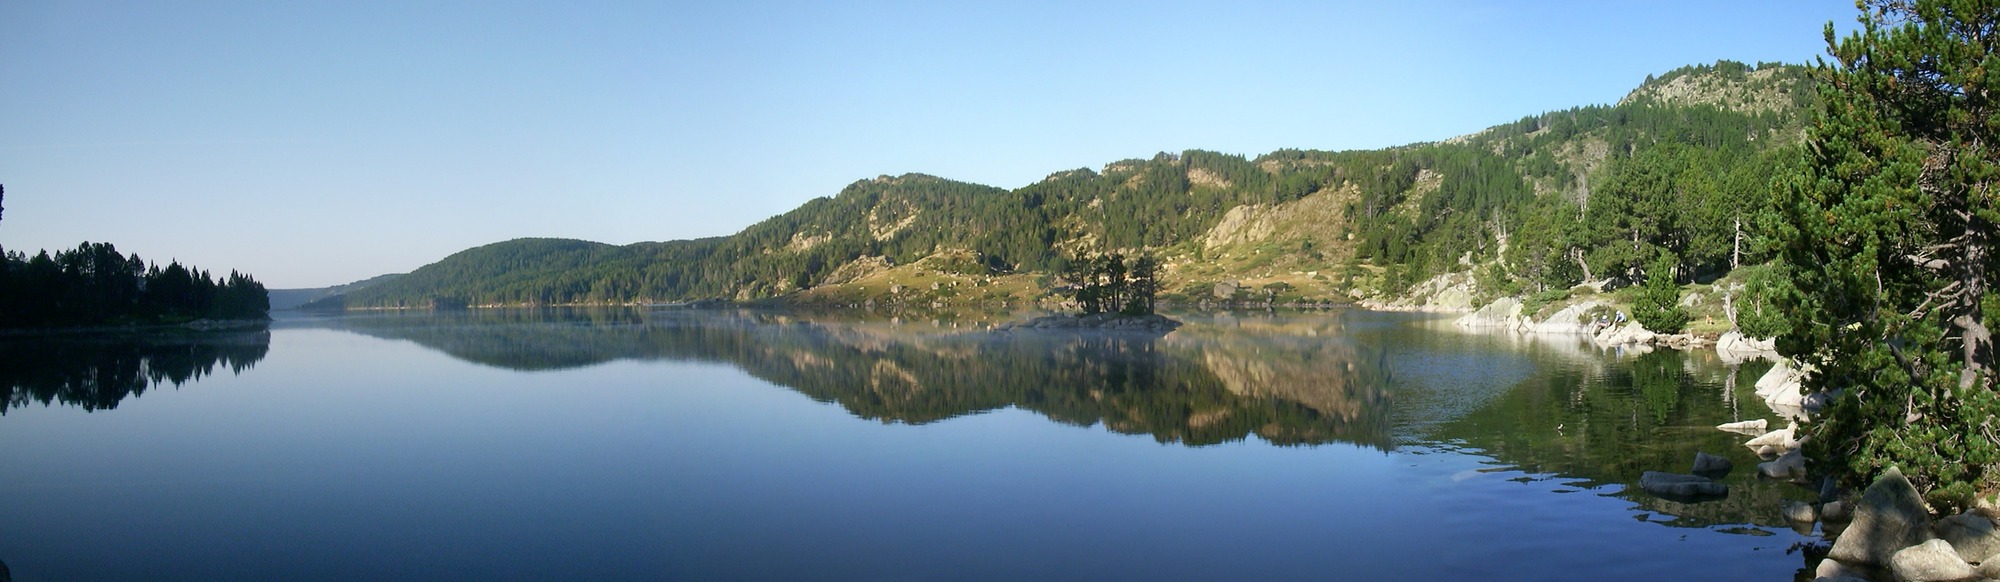 Lac des Bouillouses mit Inselchen